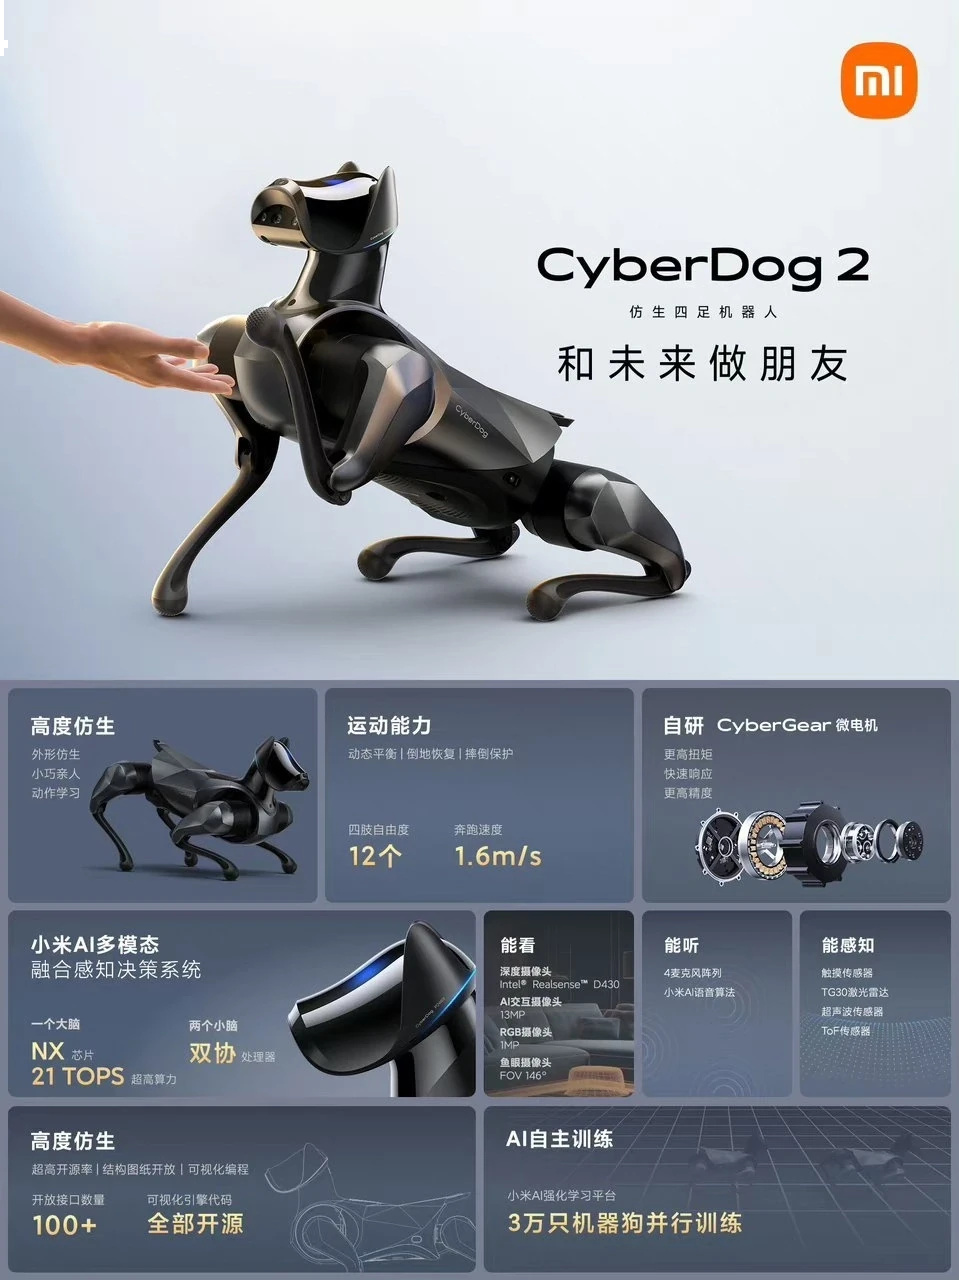 Представлен CyberDog 2 - новый робопес от Xiaomi